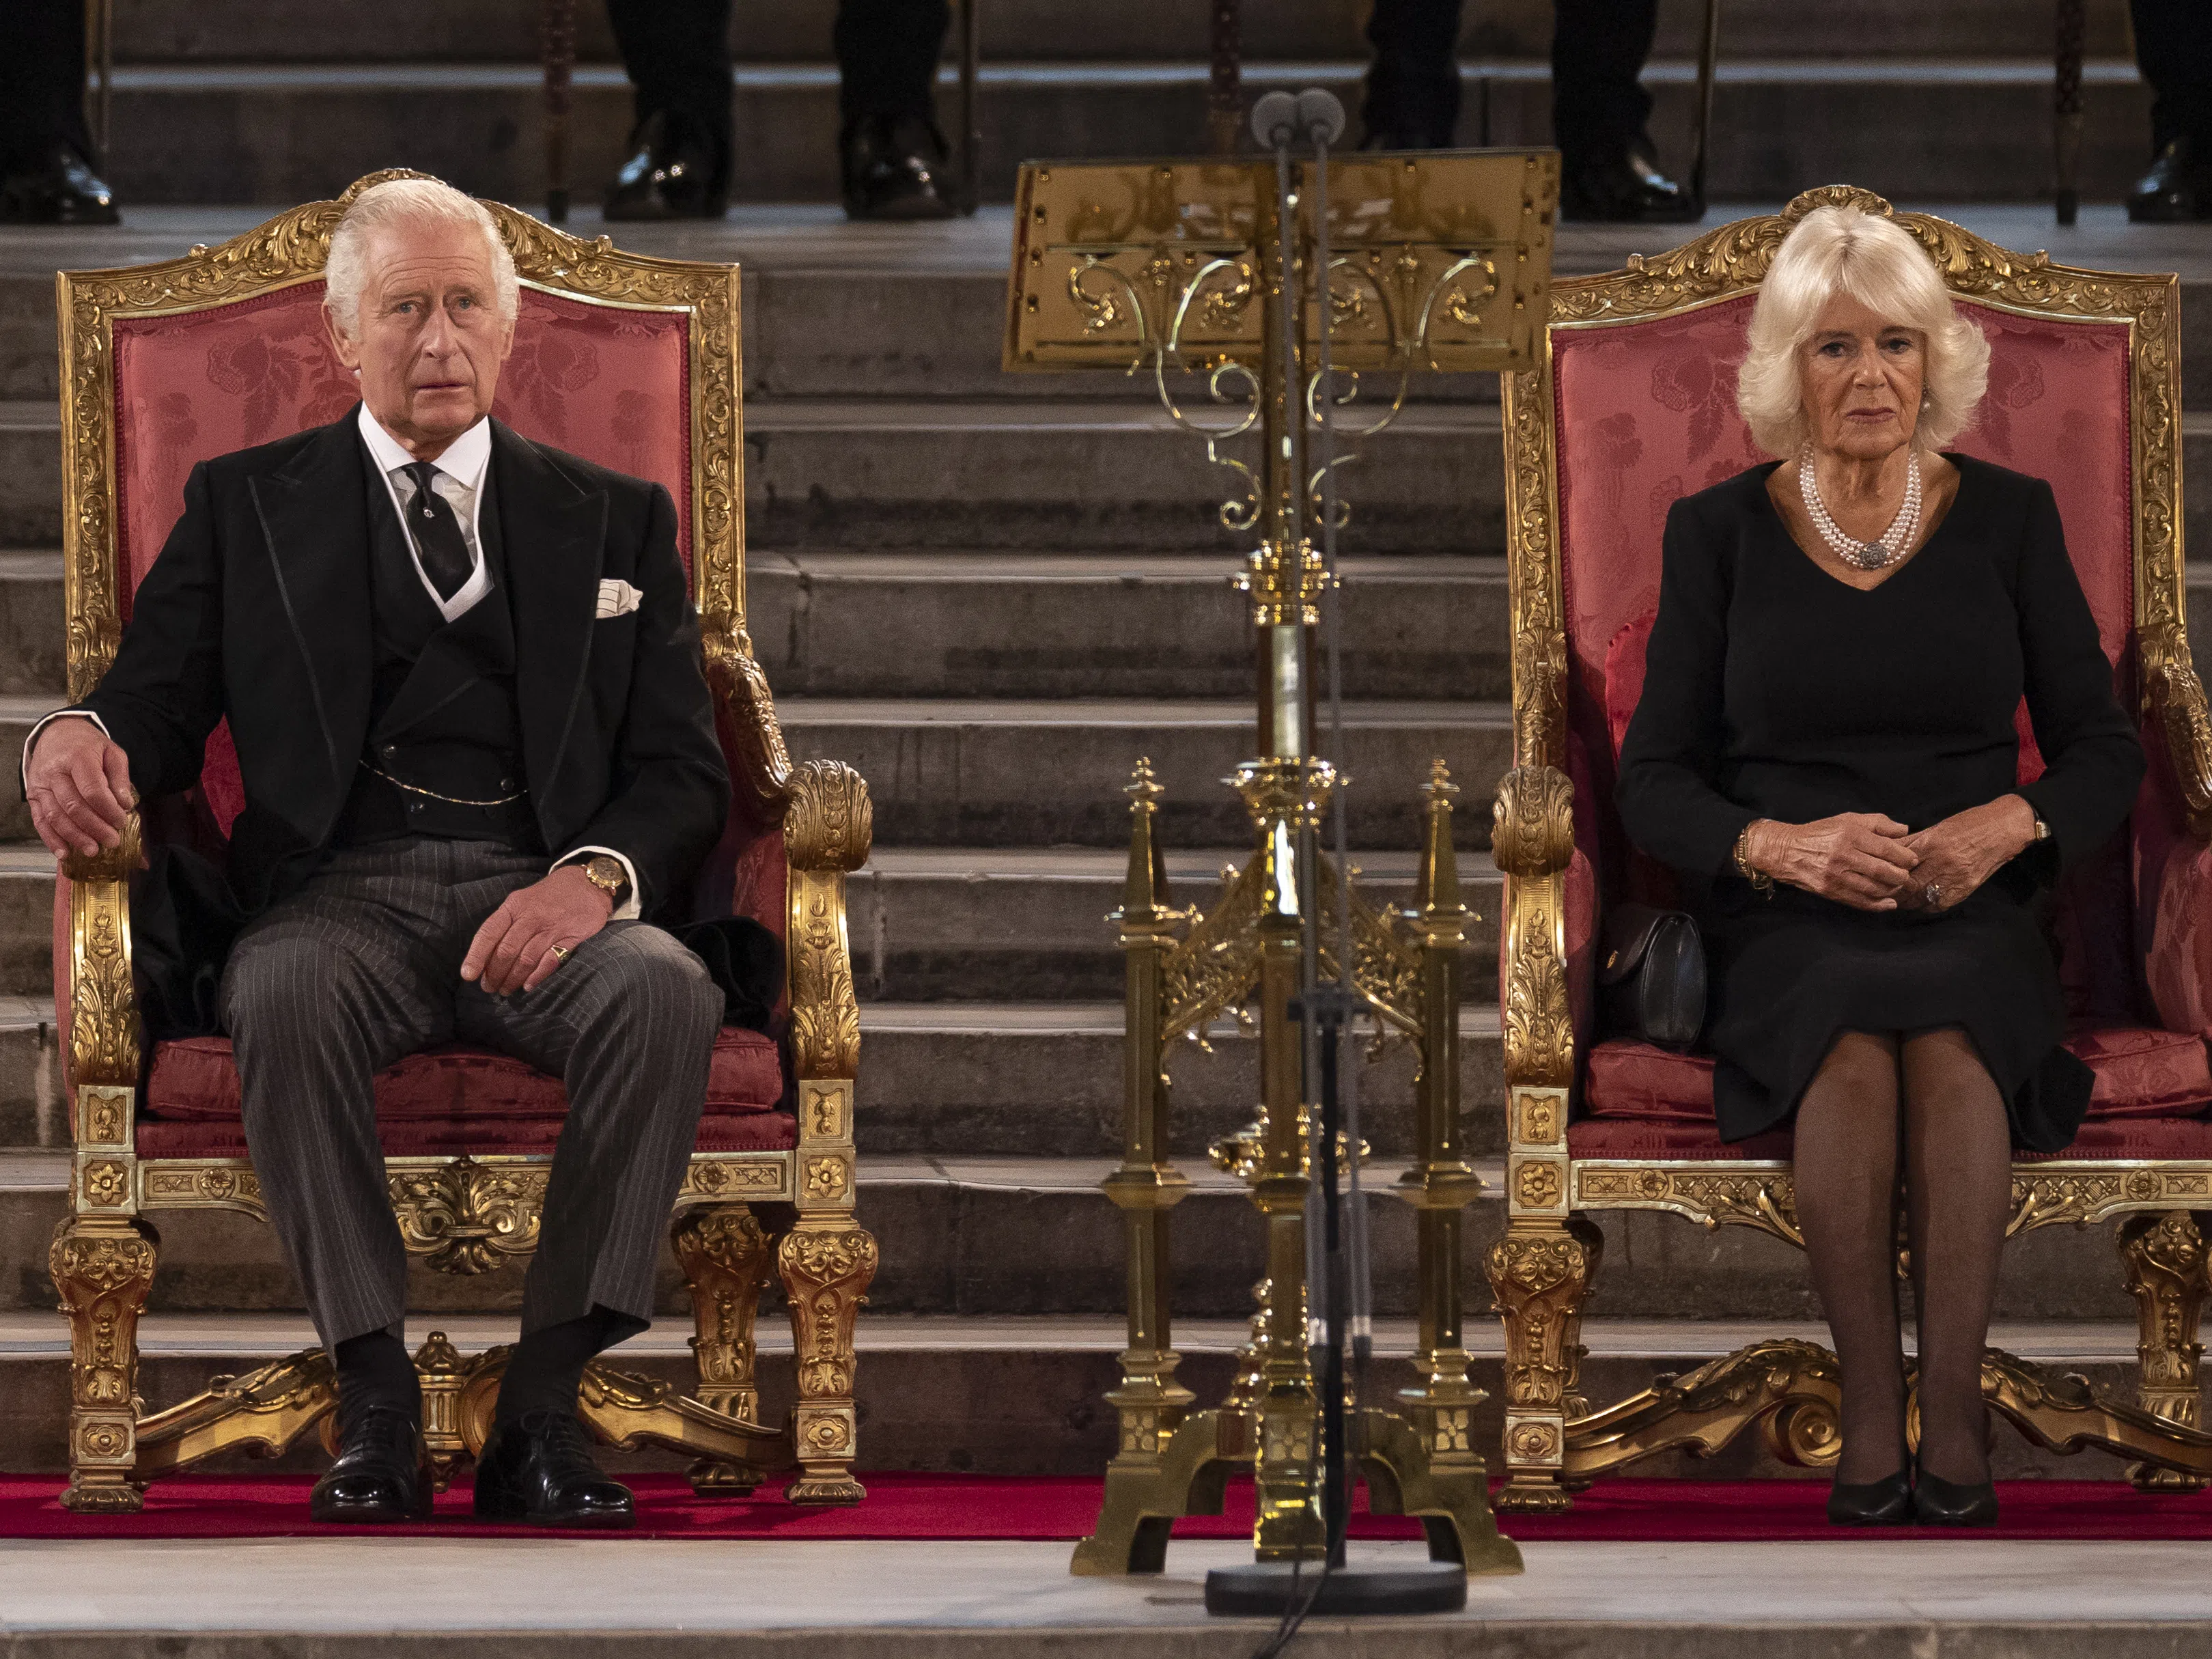 Няма да повярвате: Странните правила, които членовете на британското кралско семейство трябва да спазват